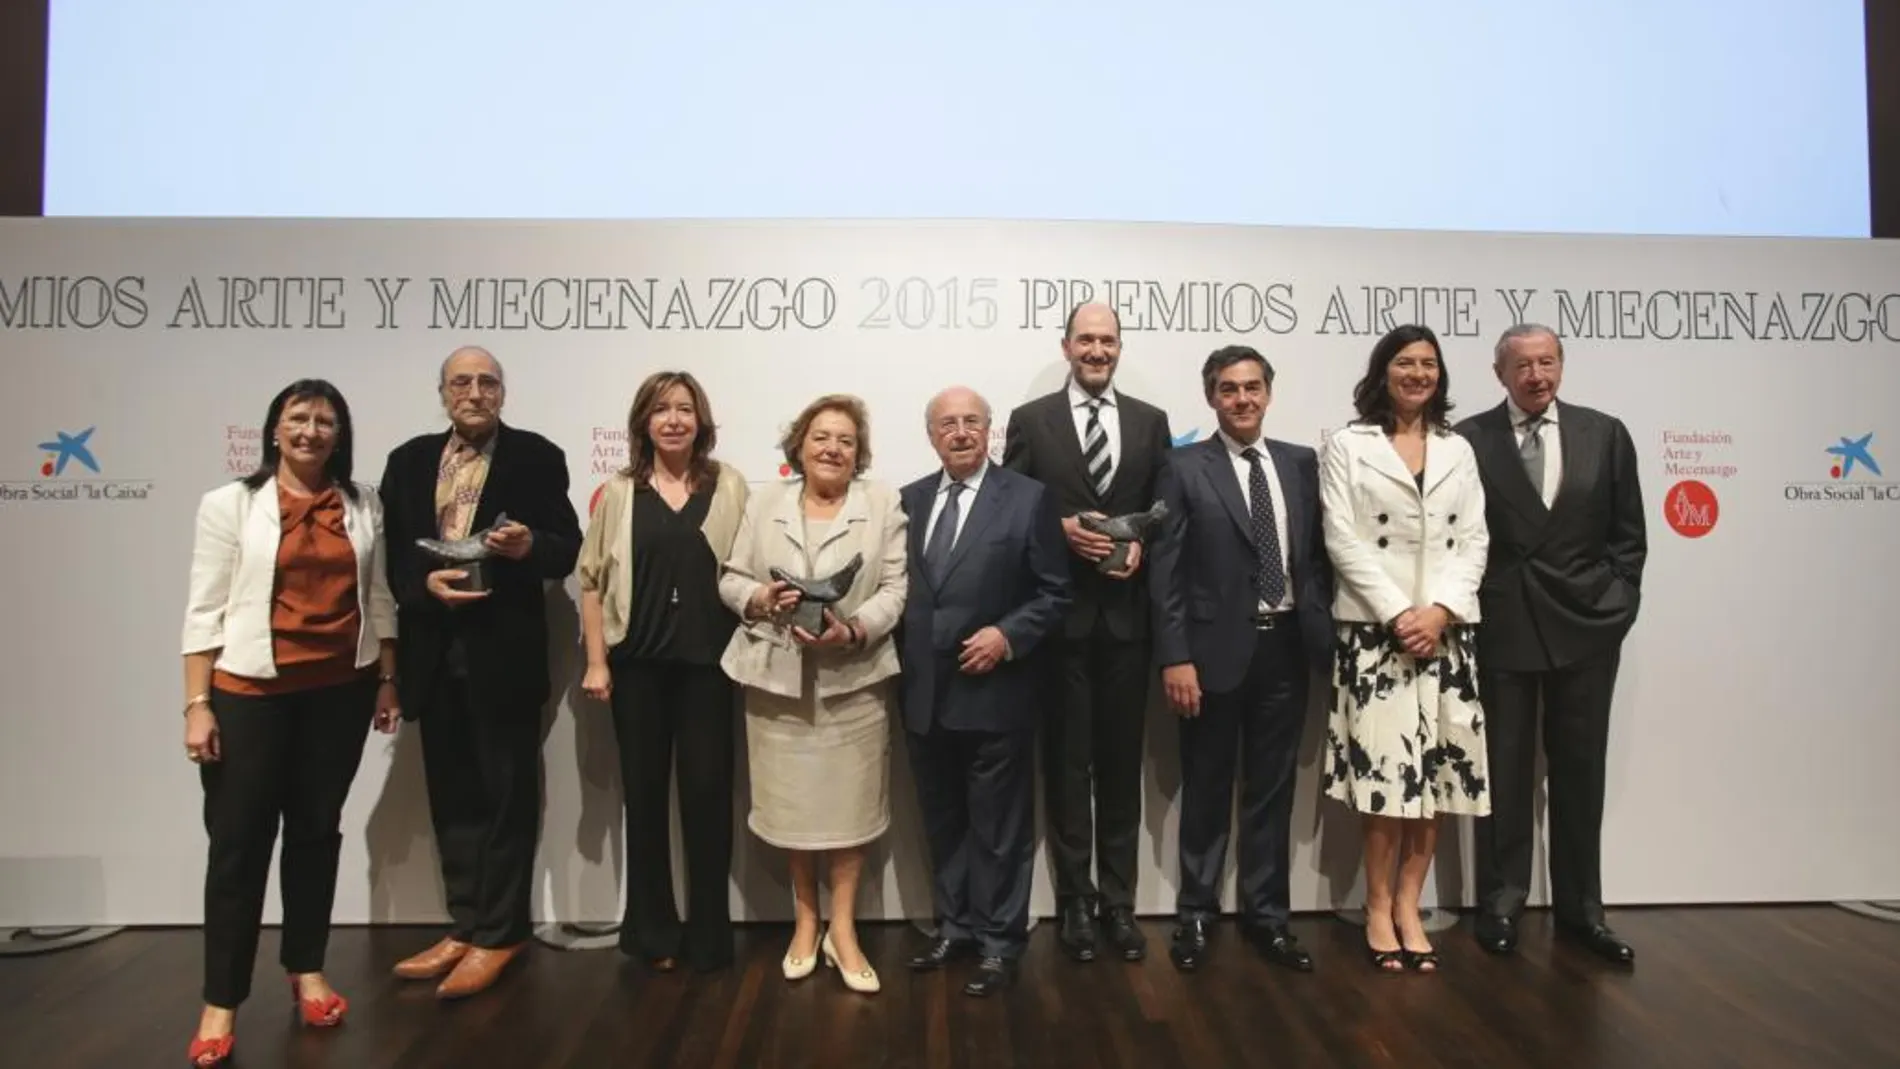 La Fundación Arte y Mecenazgo entrega en CaixaForum Madrid sus premios 2015 a Antoni Miralda, CarrerasMugica y la Fundació Sorigué